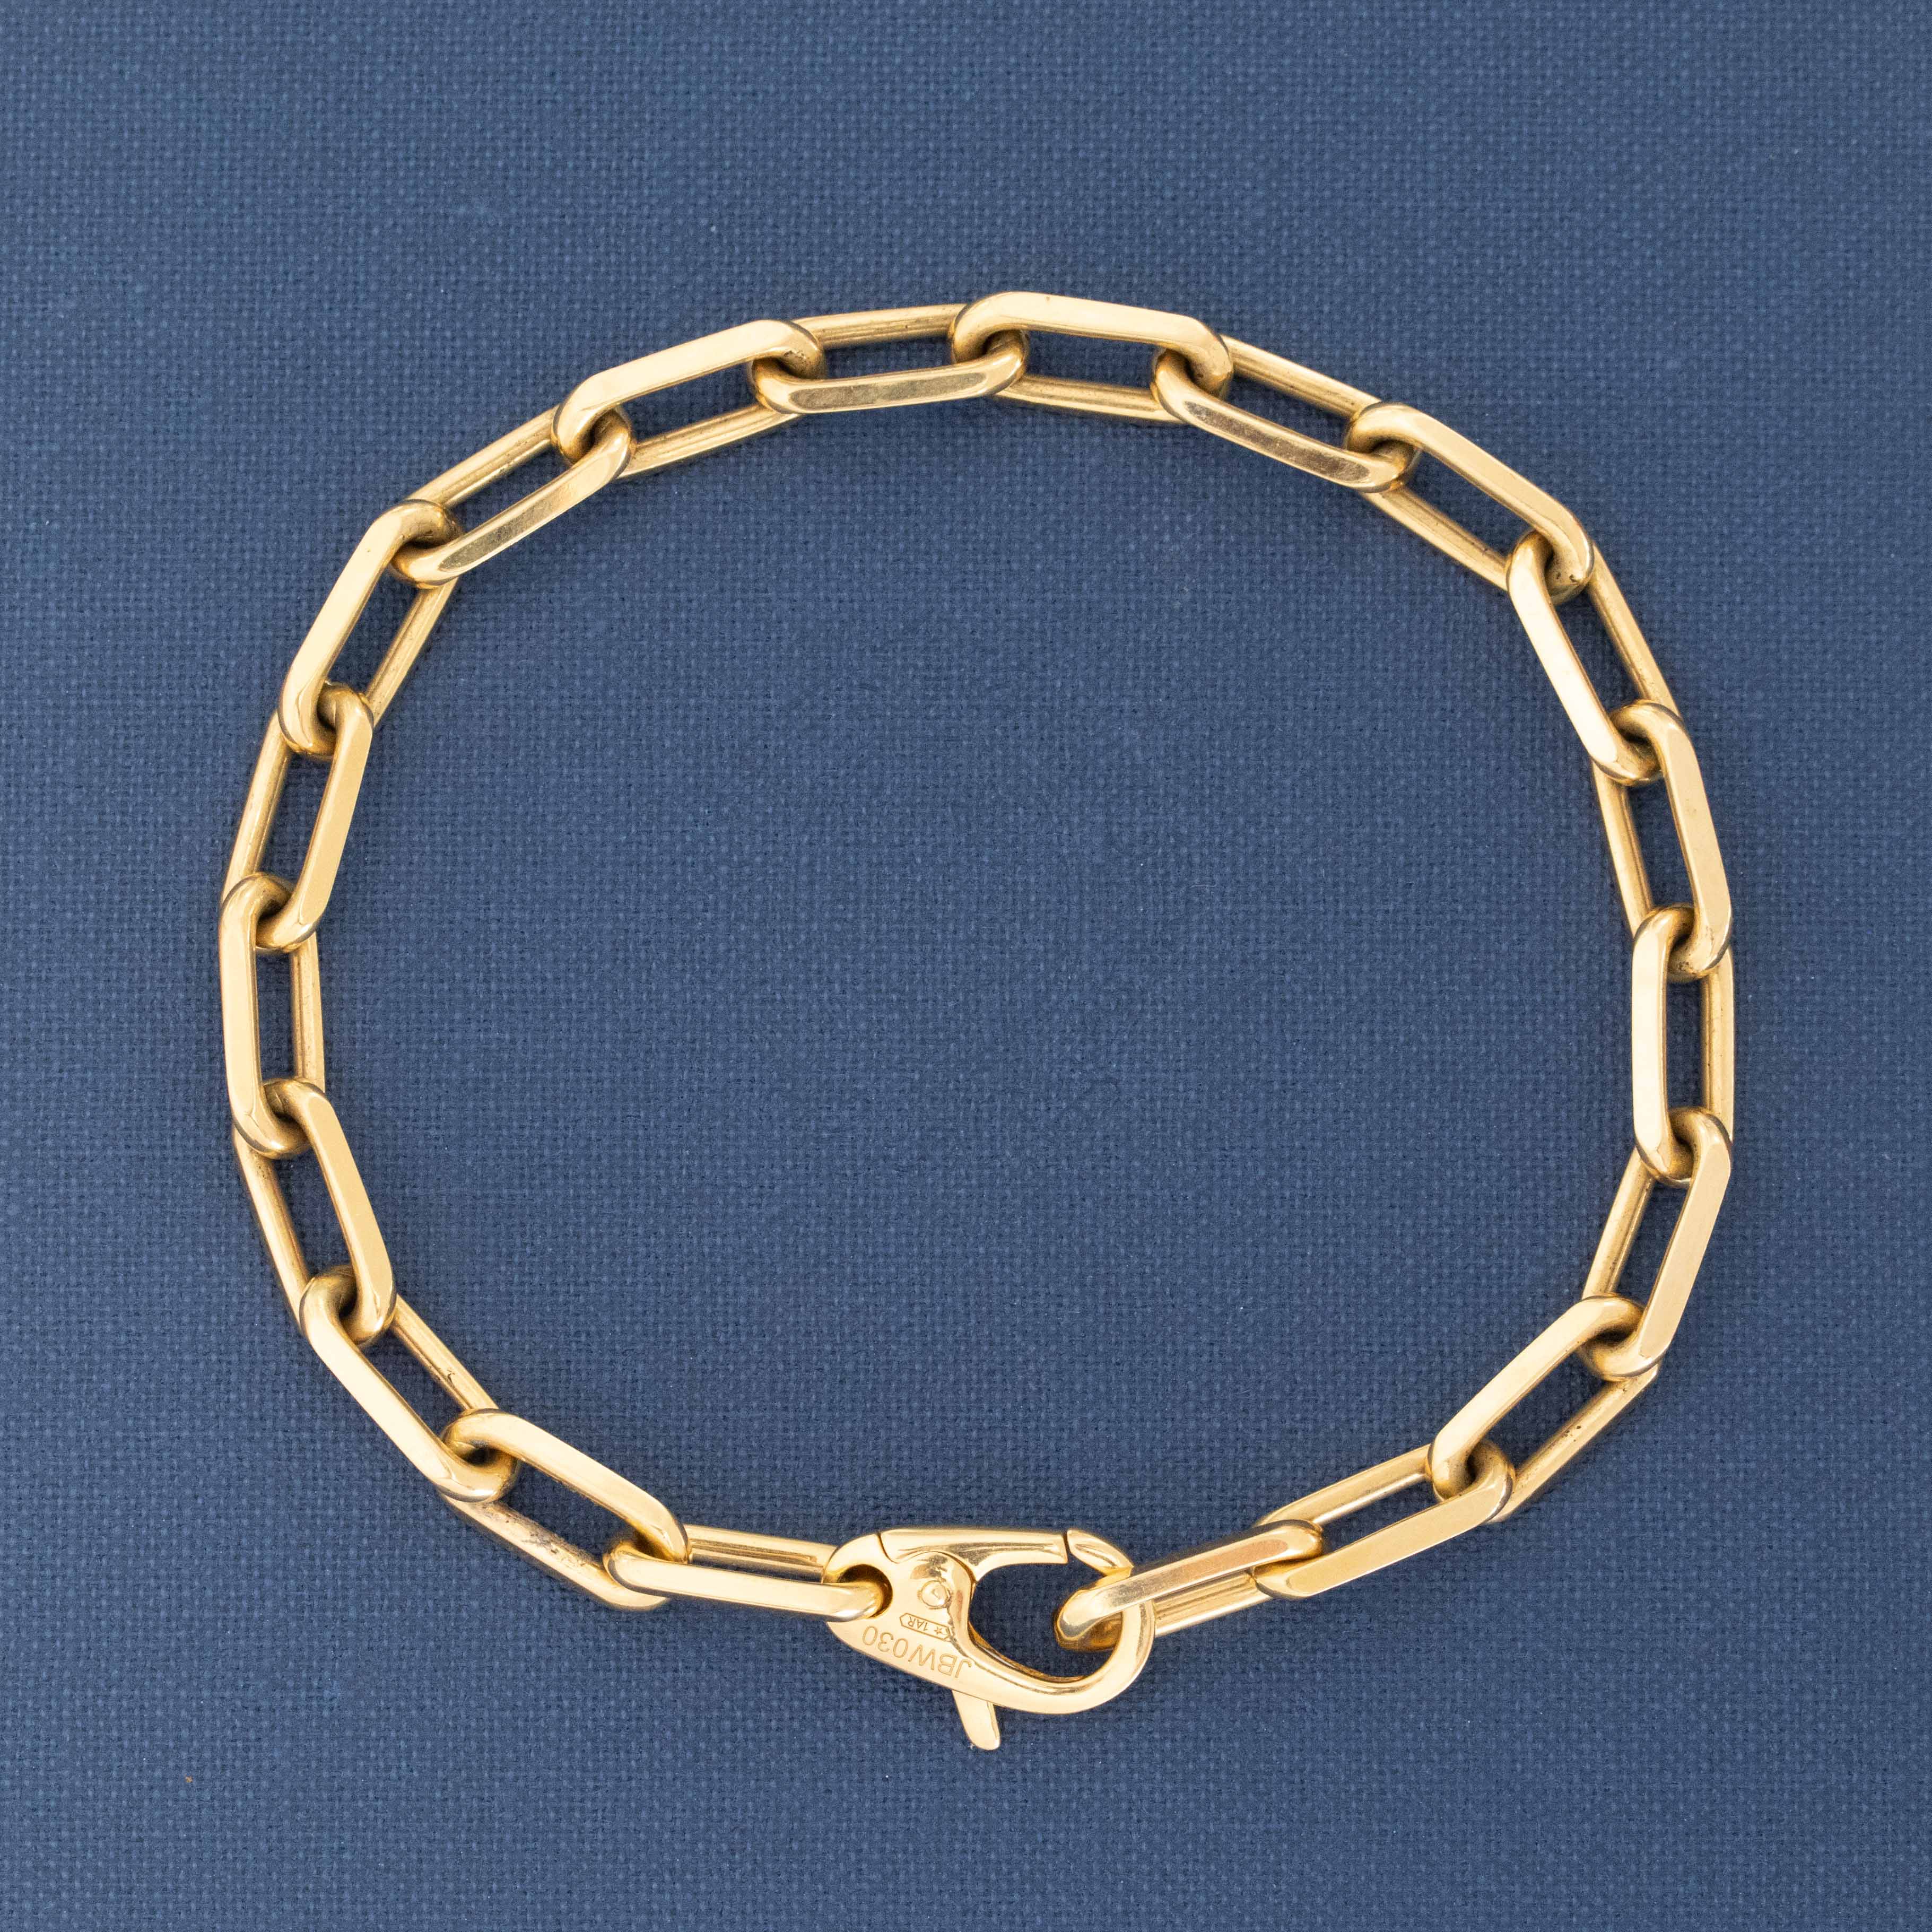 Santos de Cartier Bracelet, by Cartier – Jewels by Grace